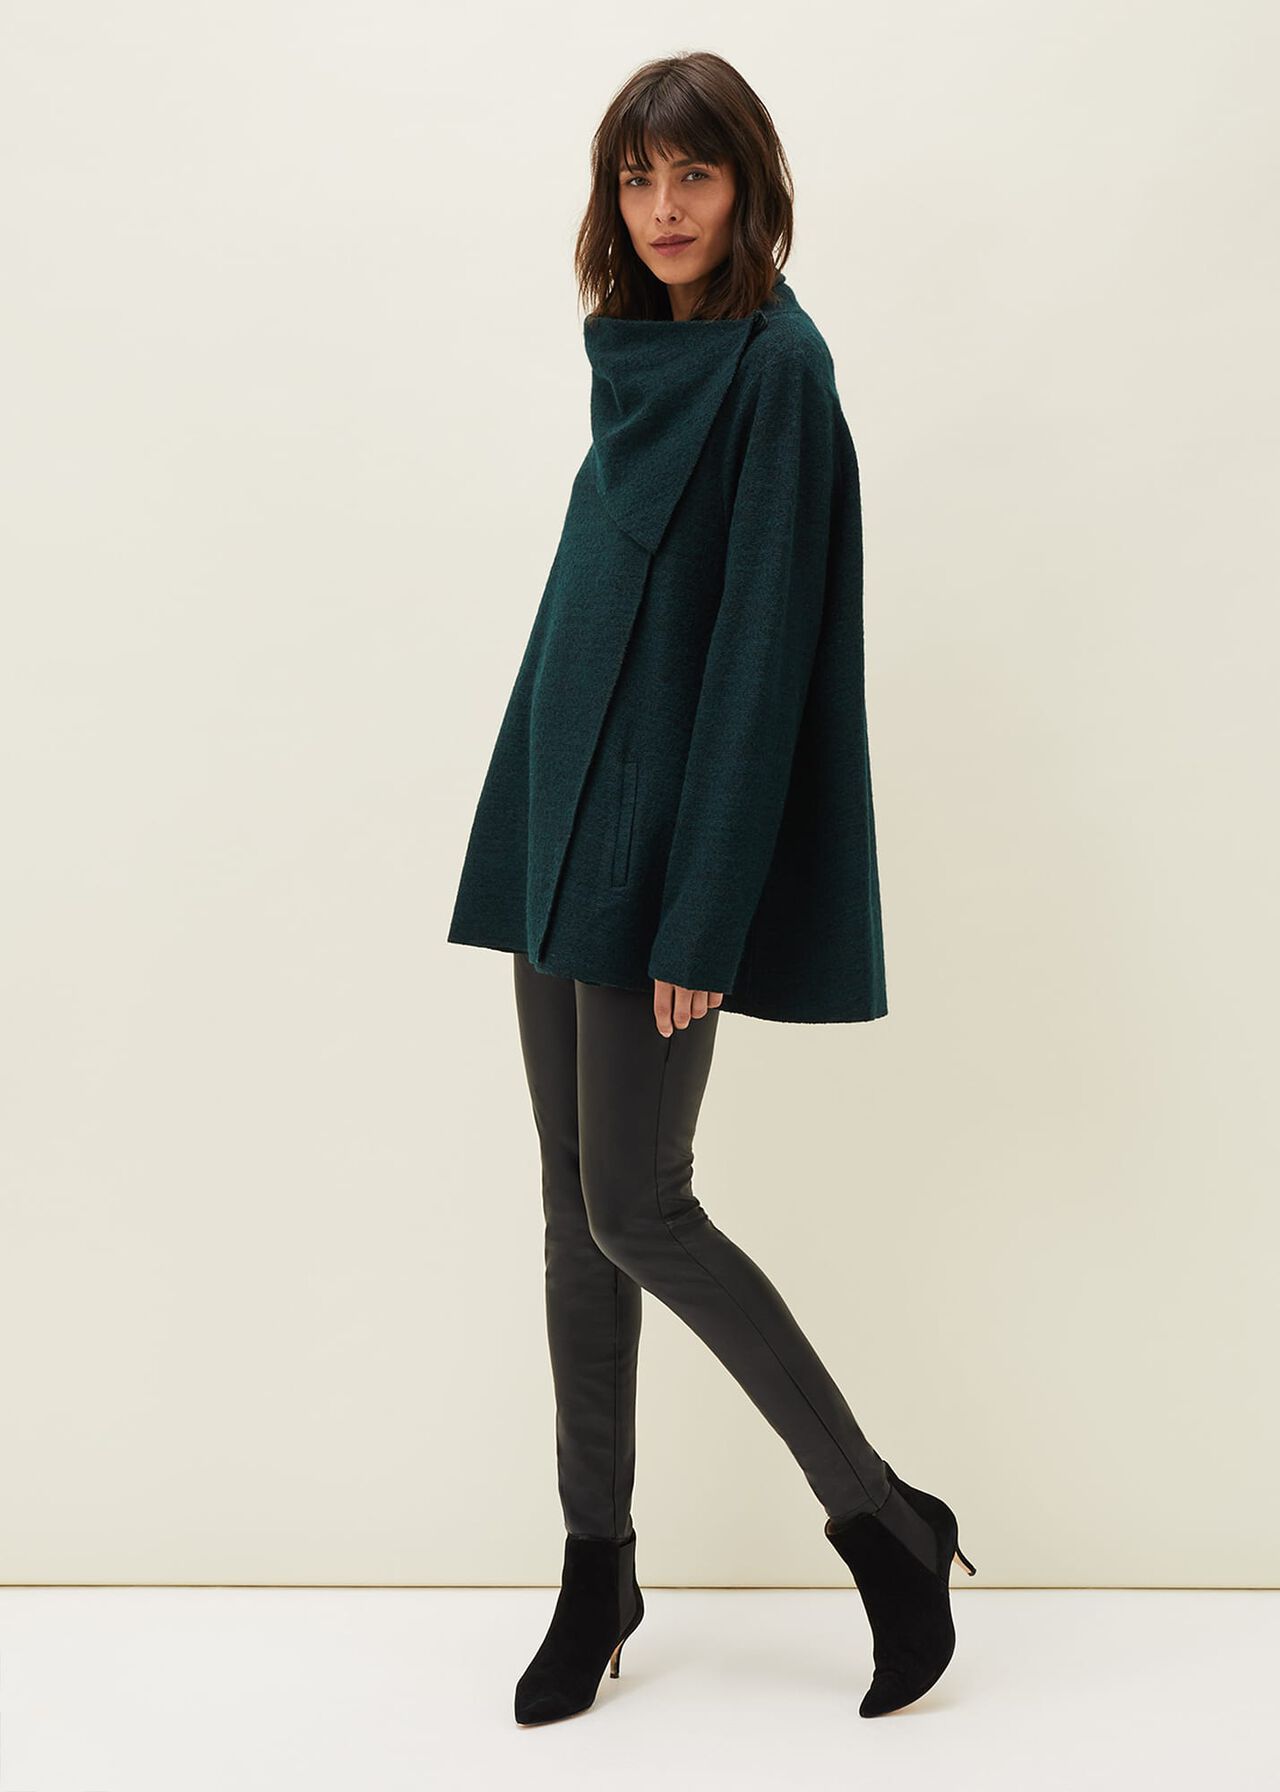 Bellona Short Knit Coat